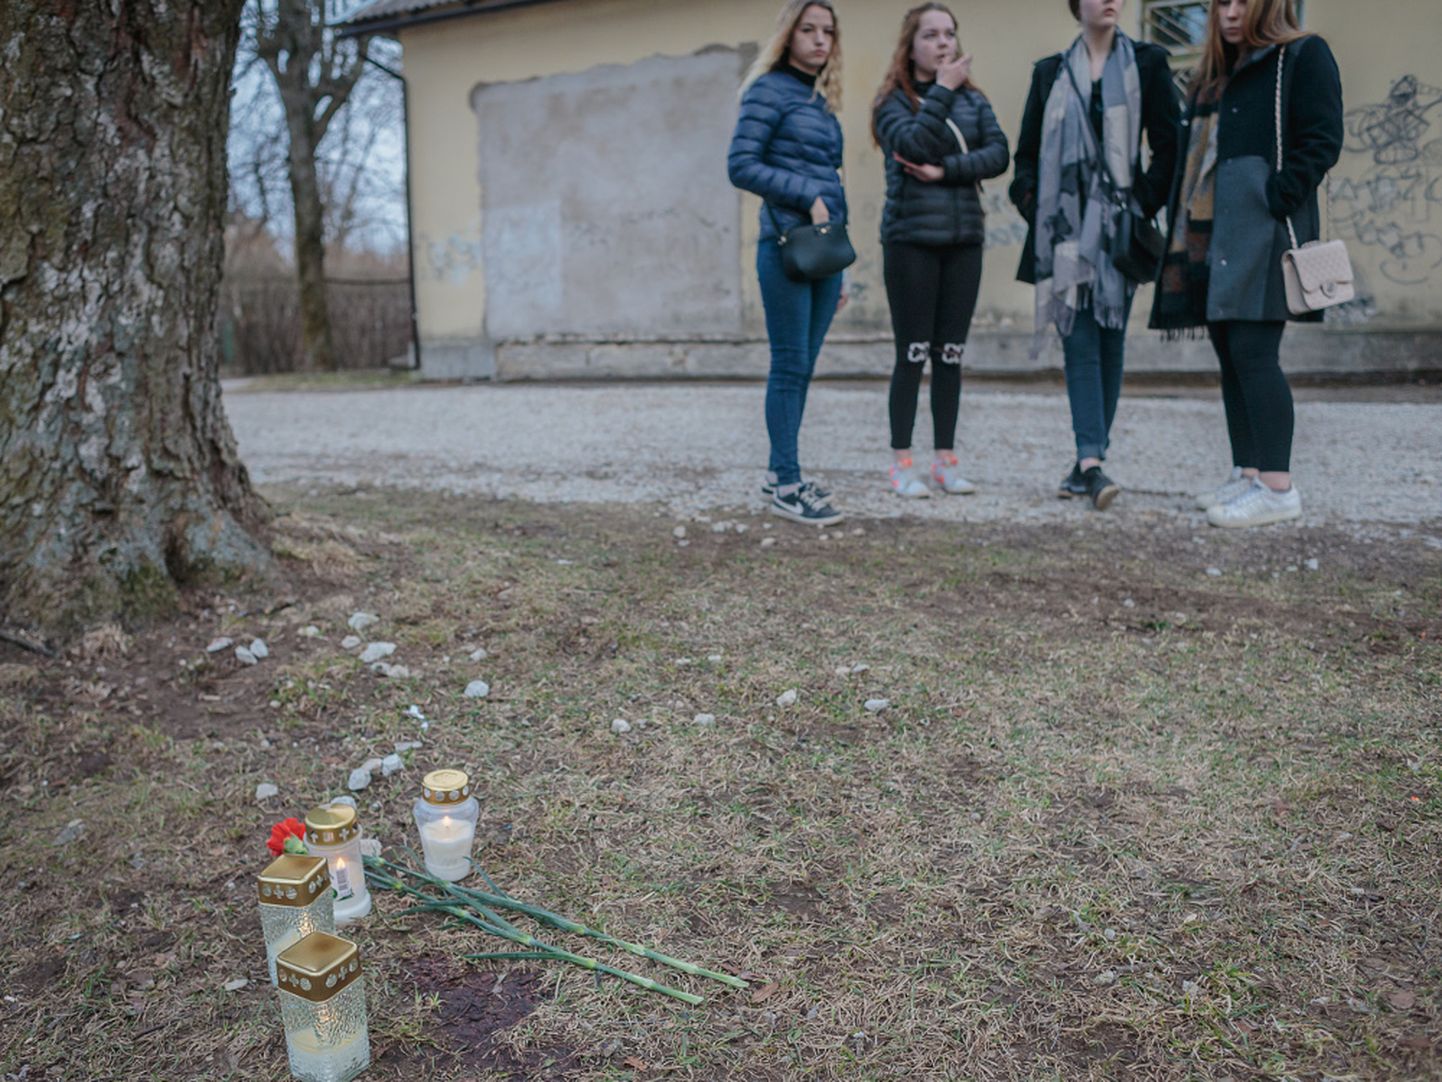 15-aastase Nastja sõbrannad tapmispäeval kuriteopaigal oma sõbrannat leinamas.